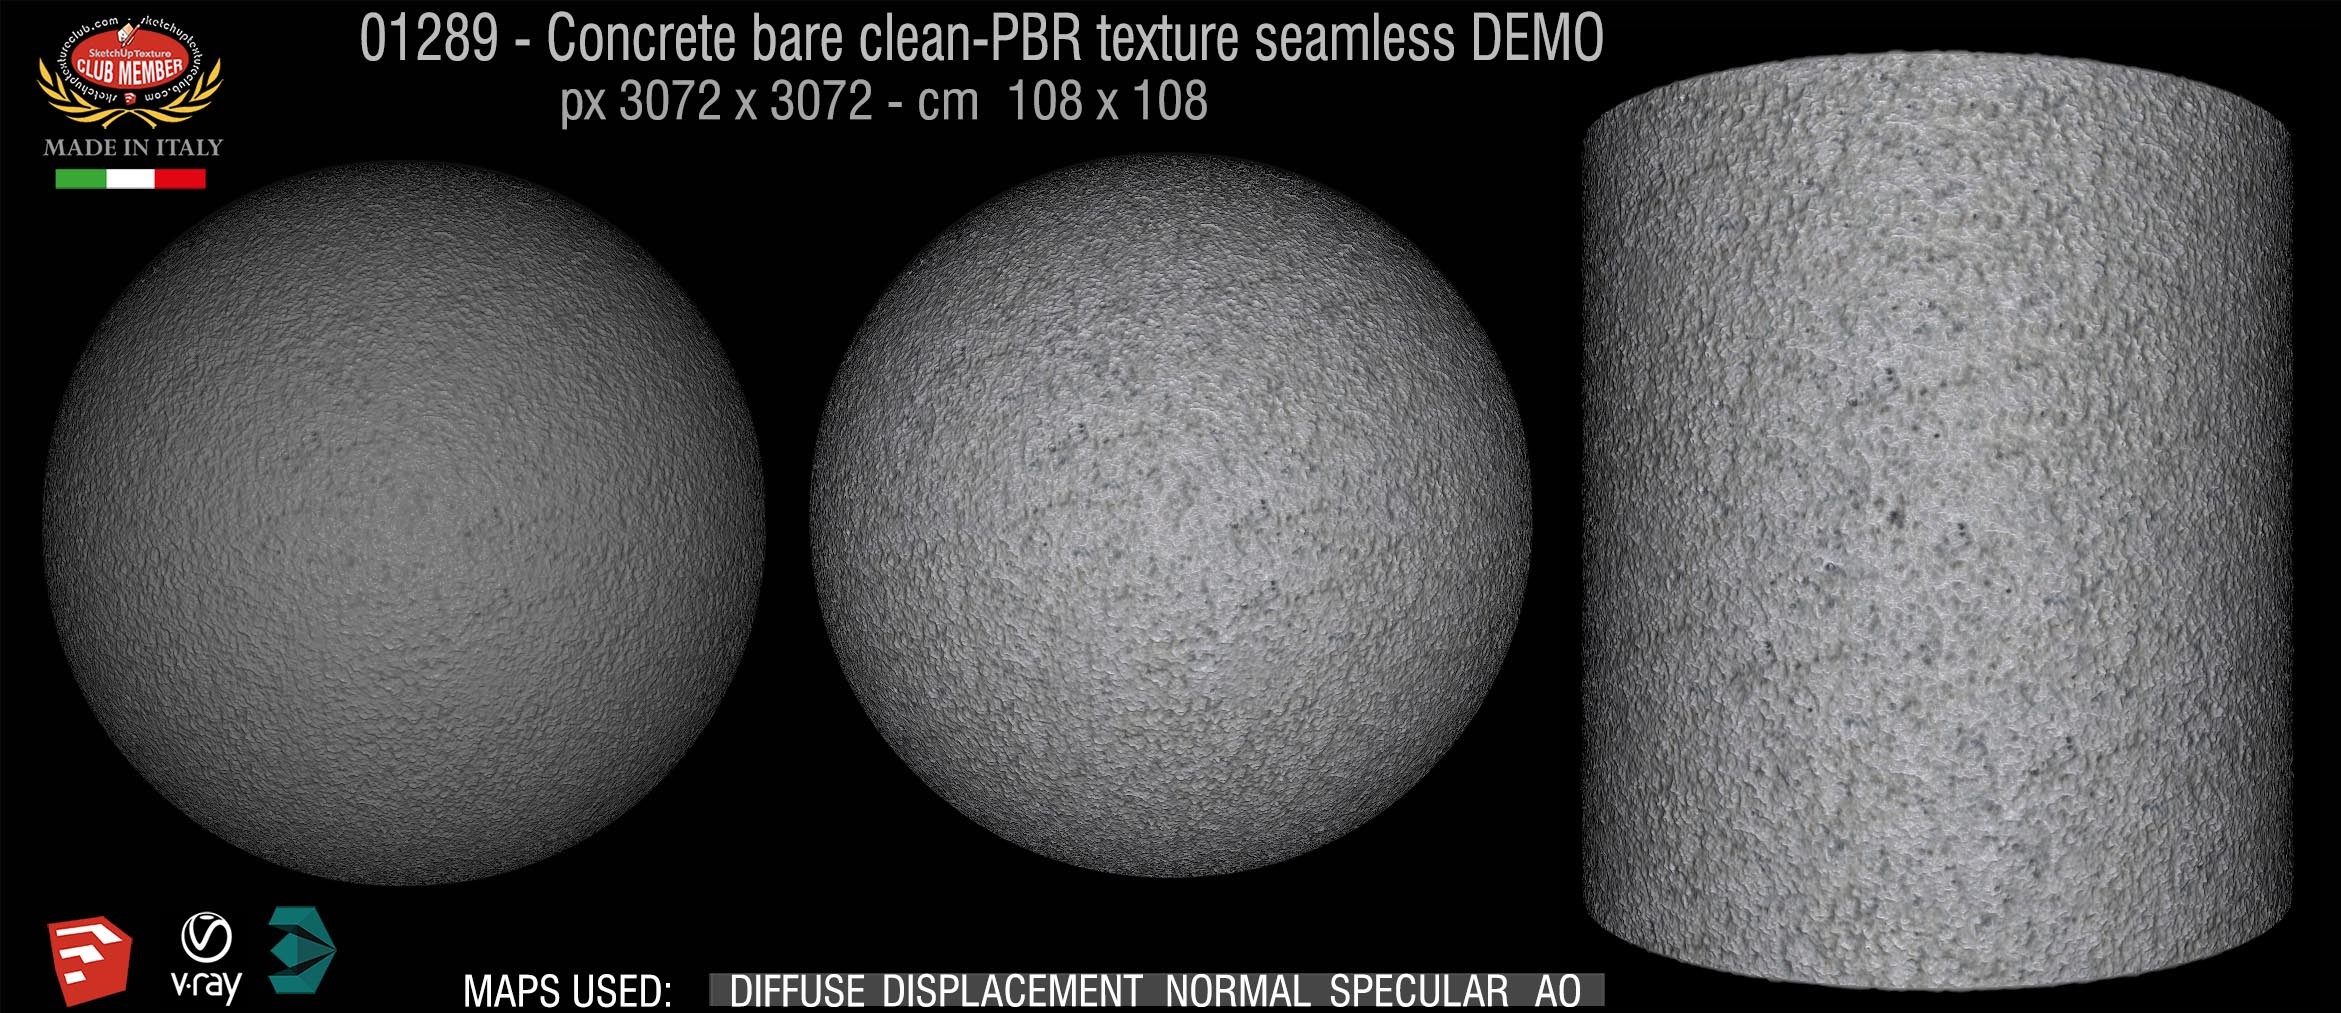 01289 Concrete bare clean-PBR texture seamless DEMO